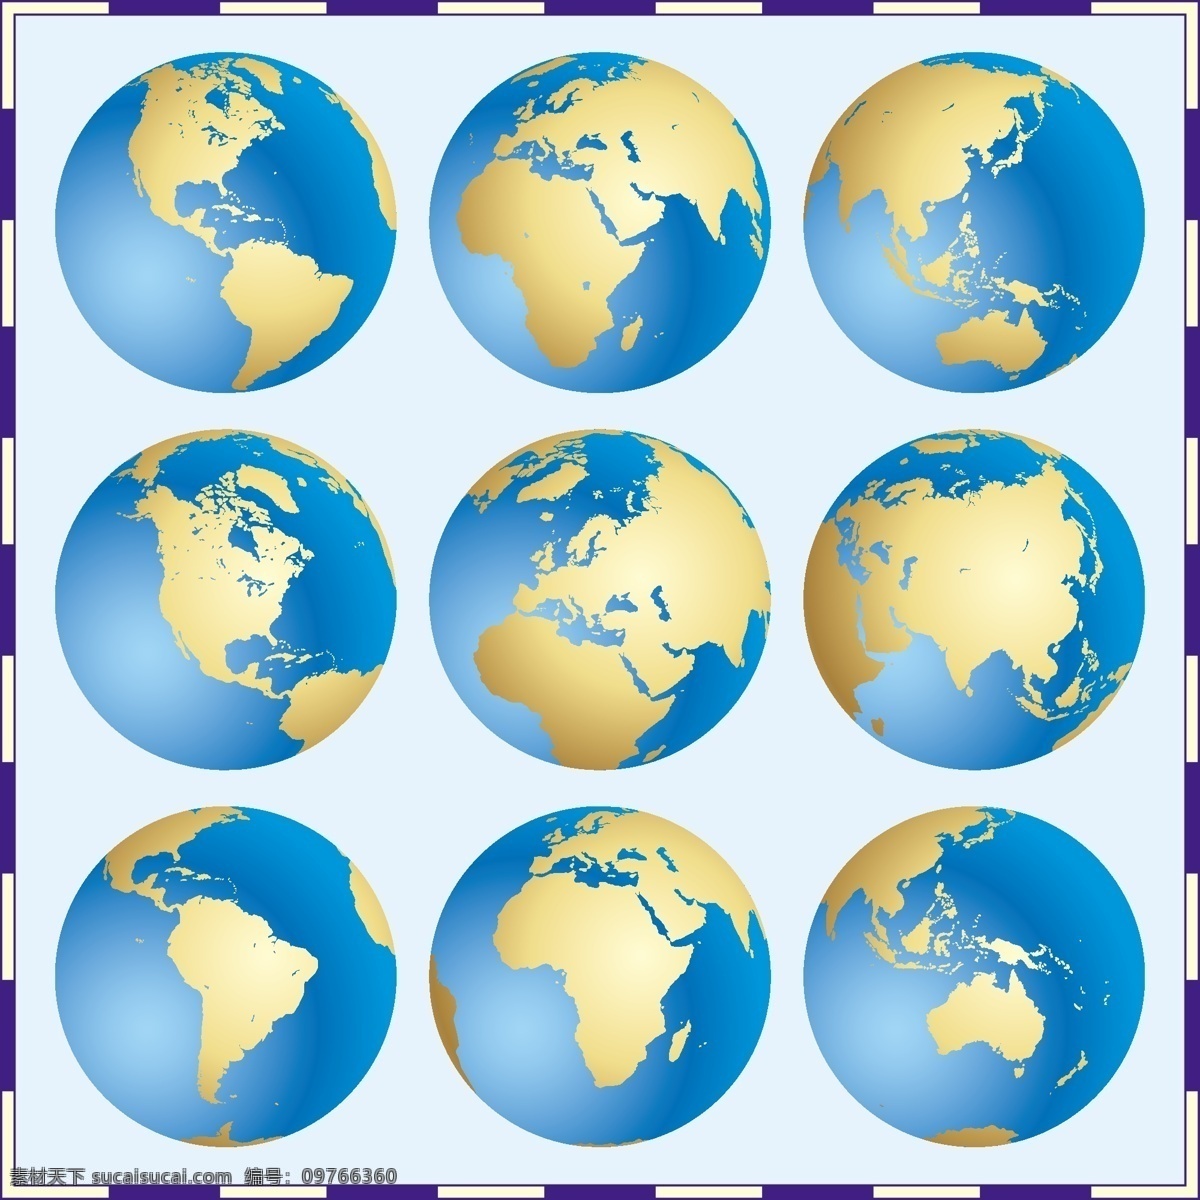 精美 世界地图 矢量 世界地理 全球世界 地图 七大洲 四 大洋 版图 环球 地形 蓝色